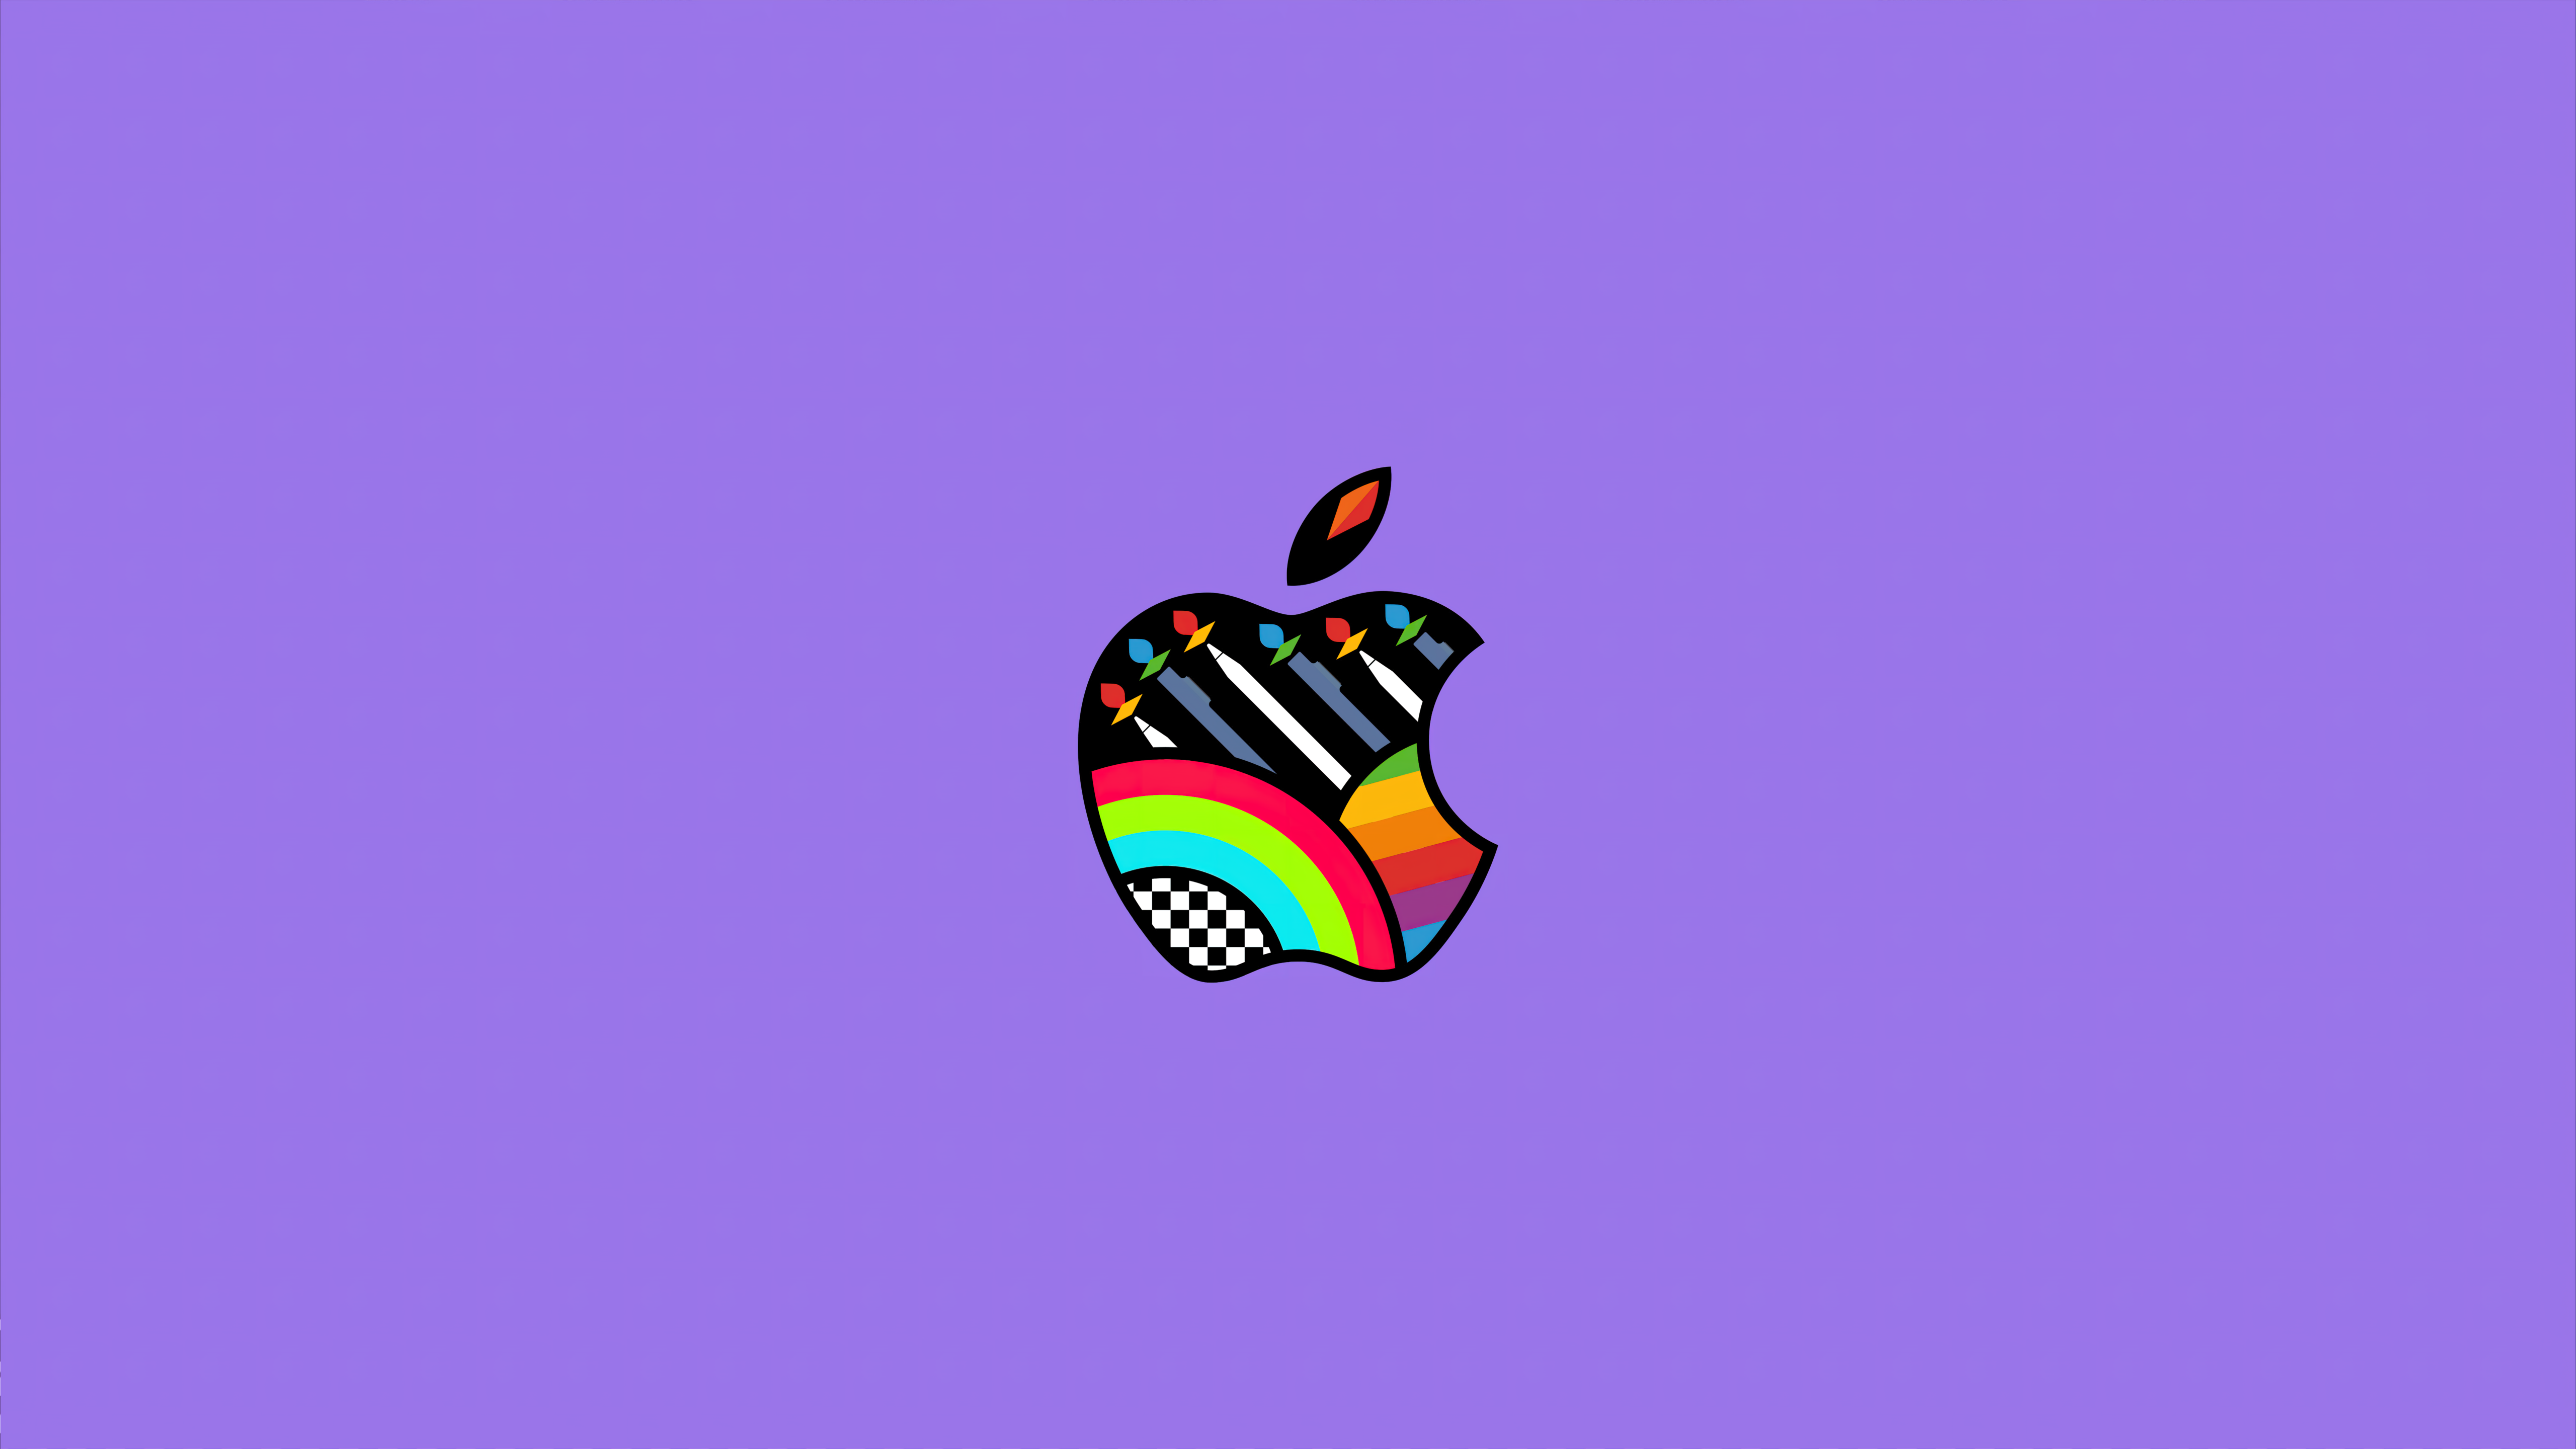 Apple logo Wallpaper 4K, Purple background, Pastel purple